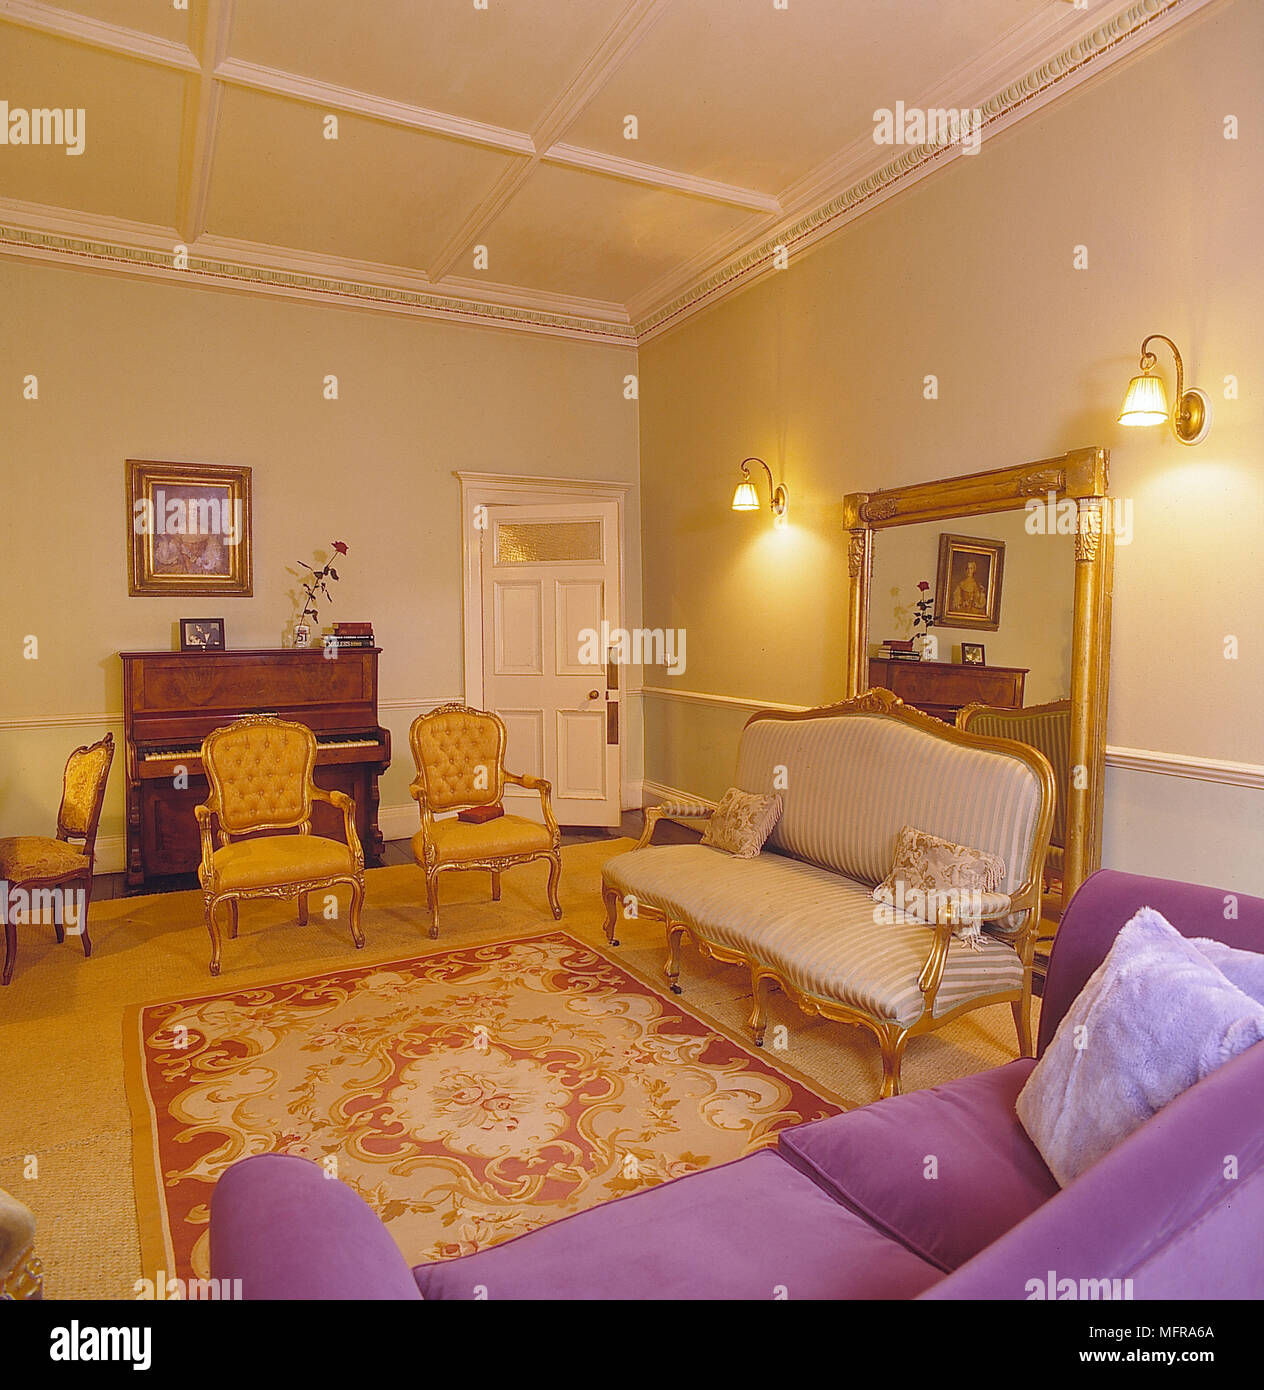 Wohnzimmer gelben Wänden roten Teppich goldenen Teppich lila Couch gold Stühle piano Große gold Spiegel Ineteriors zimmer Antiquitäten Gemälde Wandleuchten plasterw Stockfoto